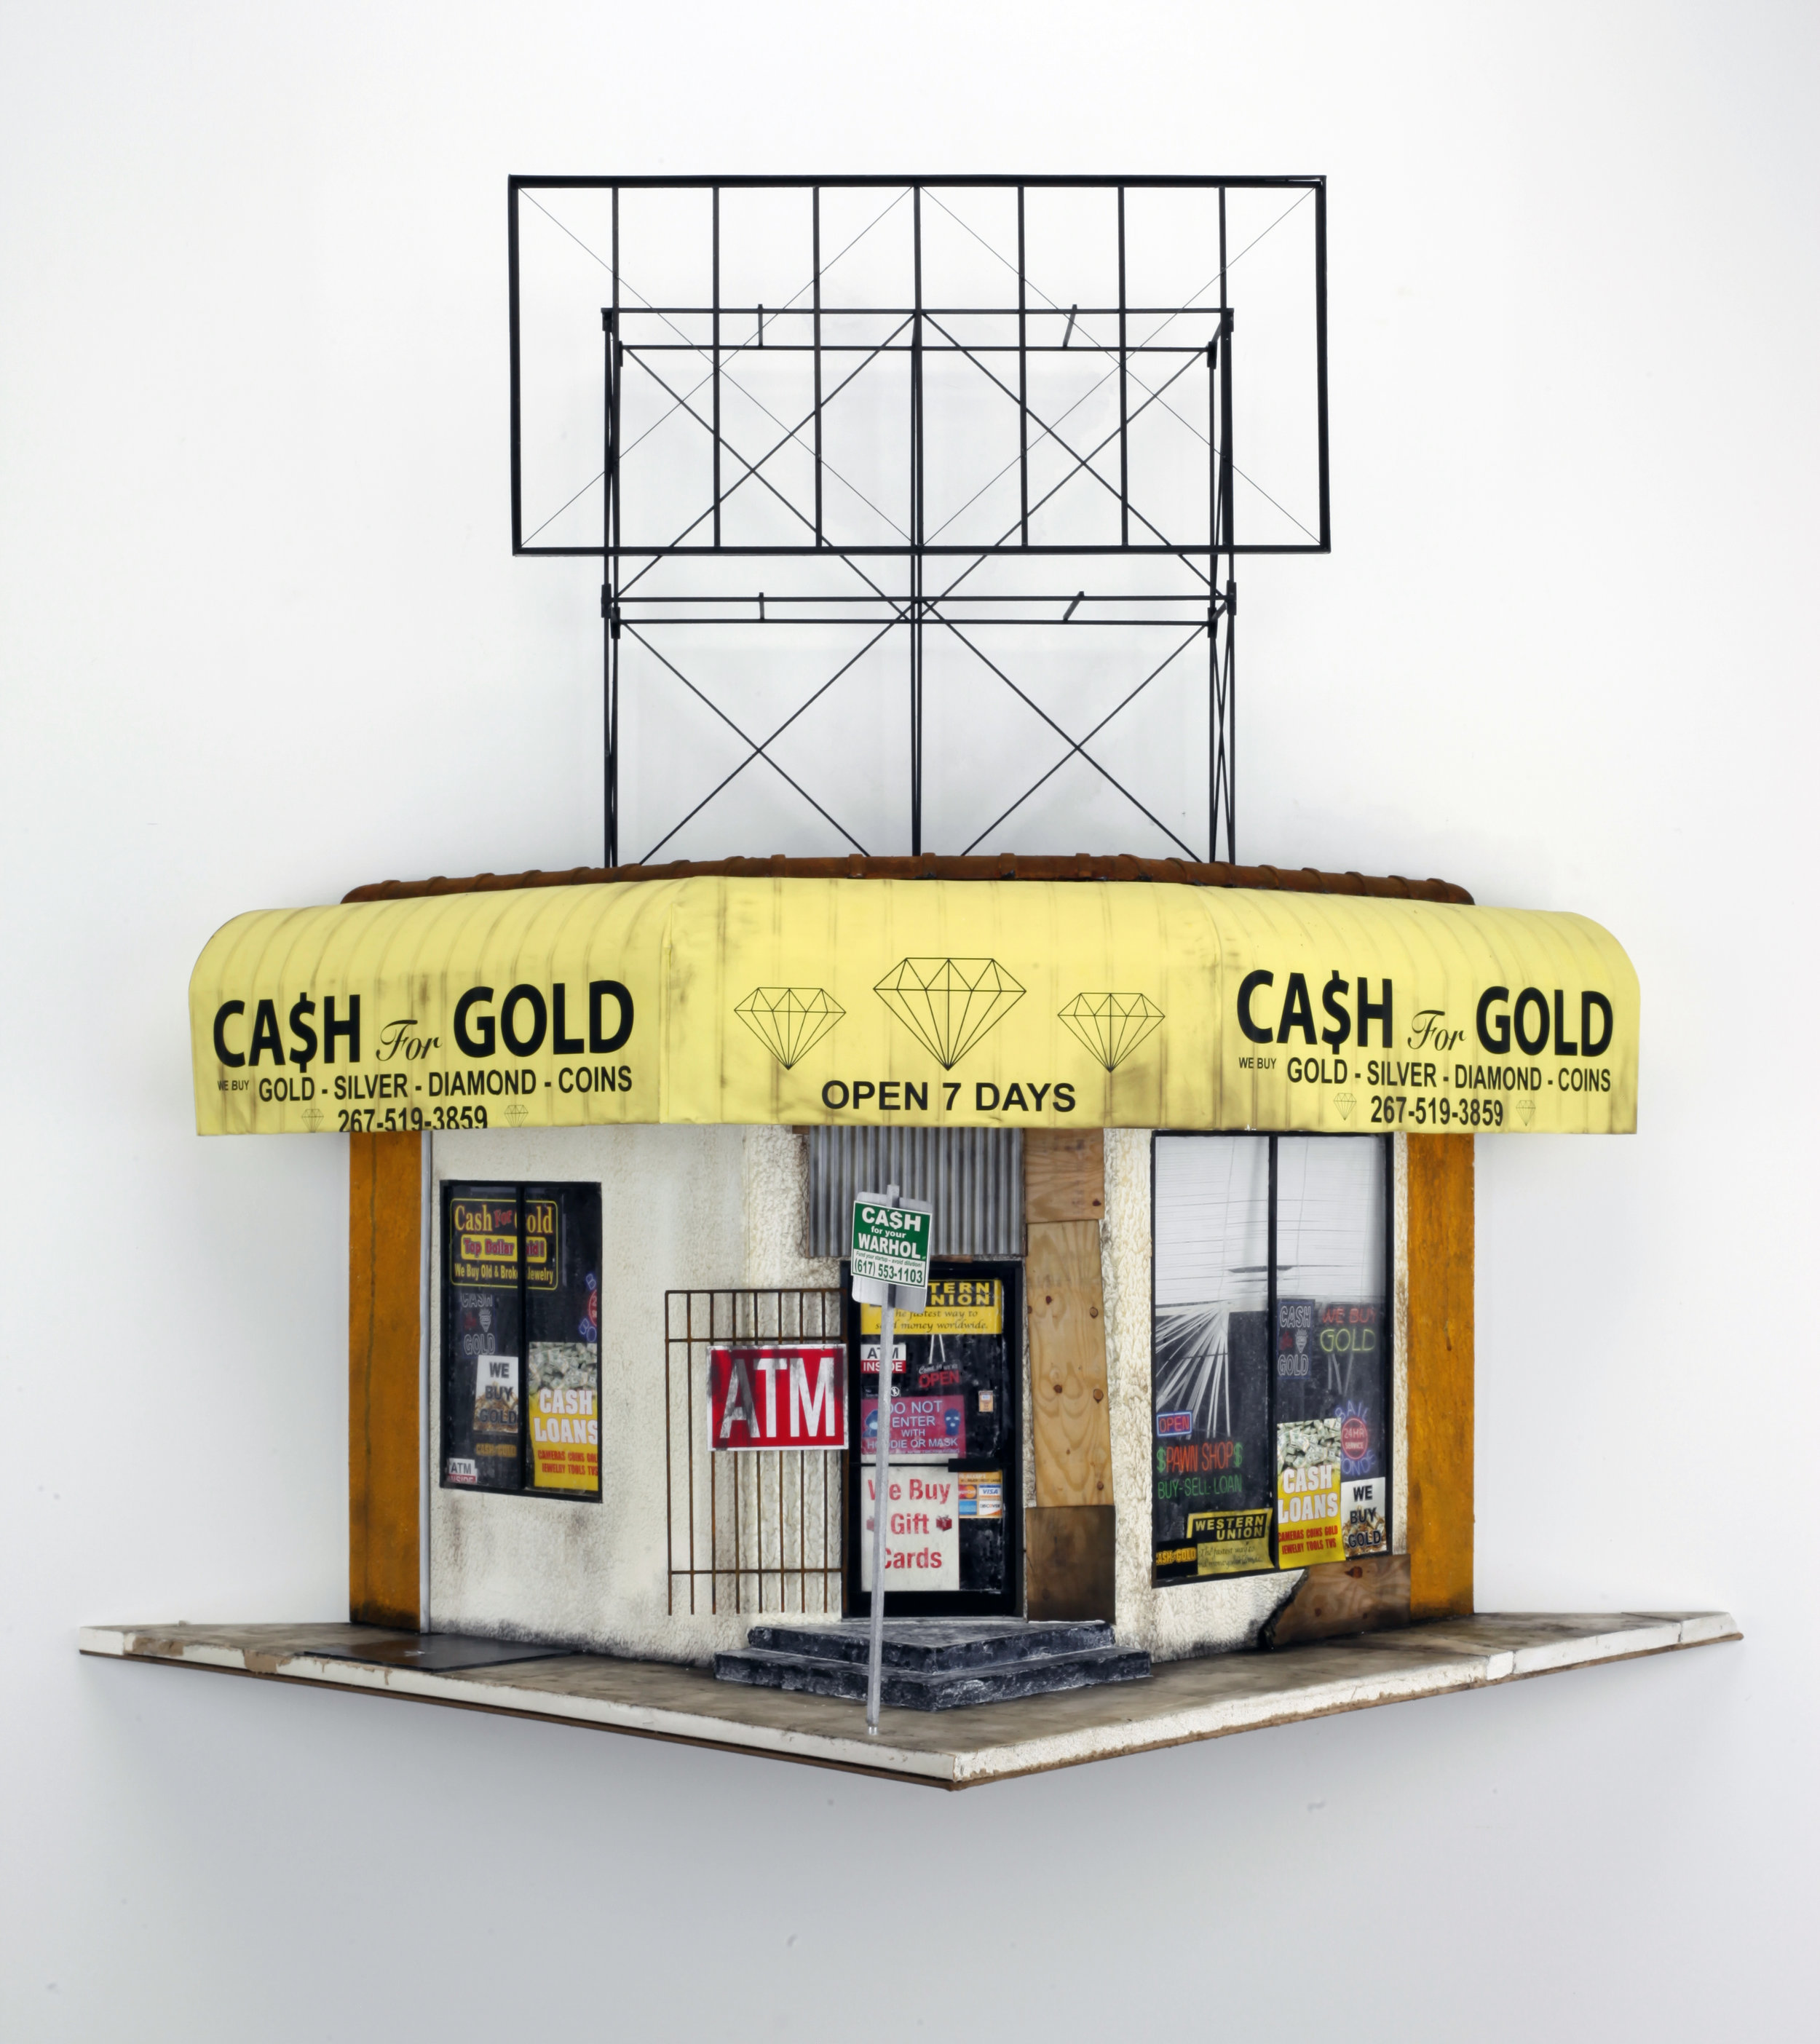 Cash 4 Gold - SOLD